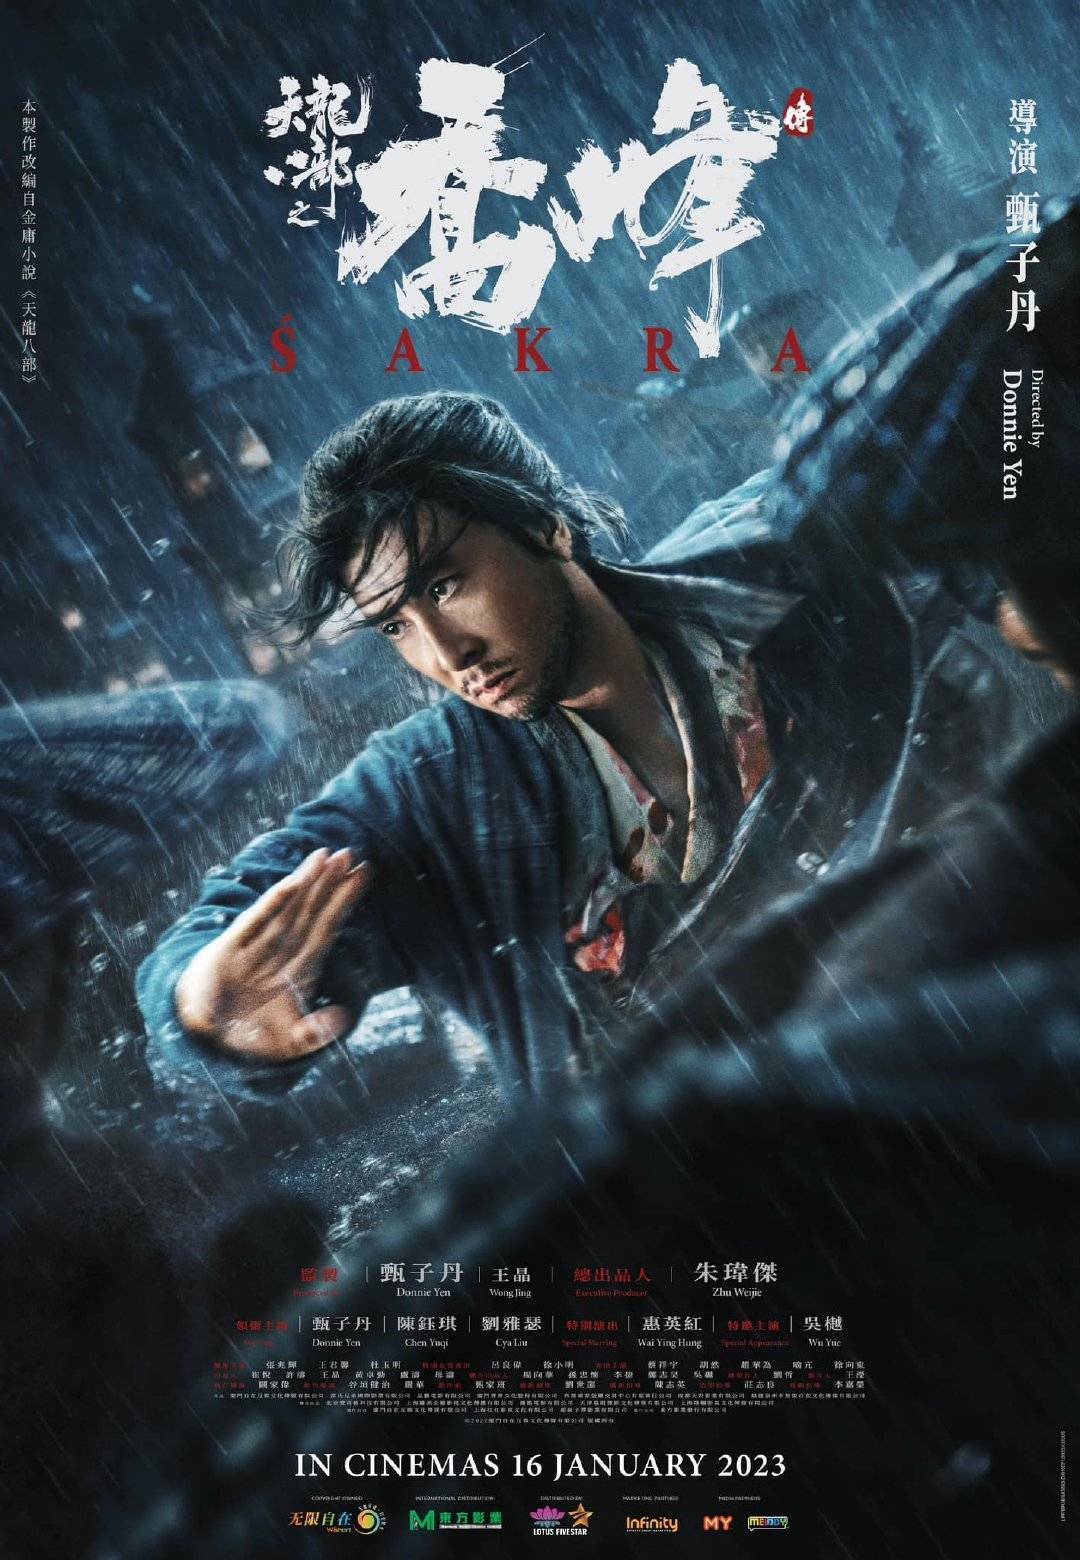 甄子丹自导自演武侠片子《天龙八部之乔峰传》发布新海报